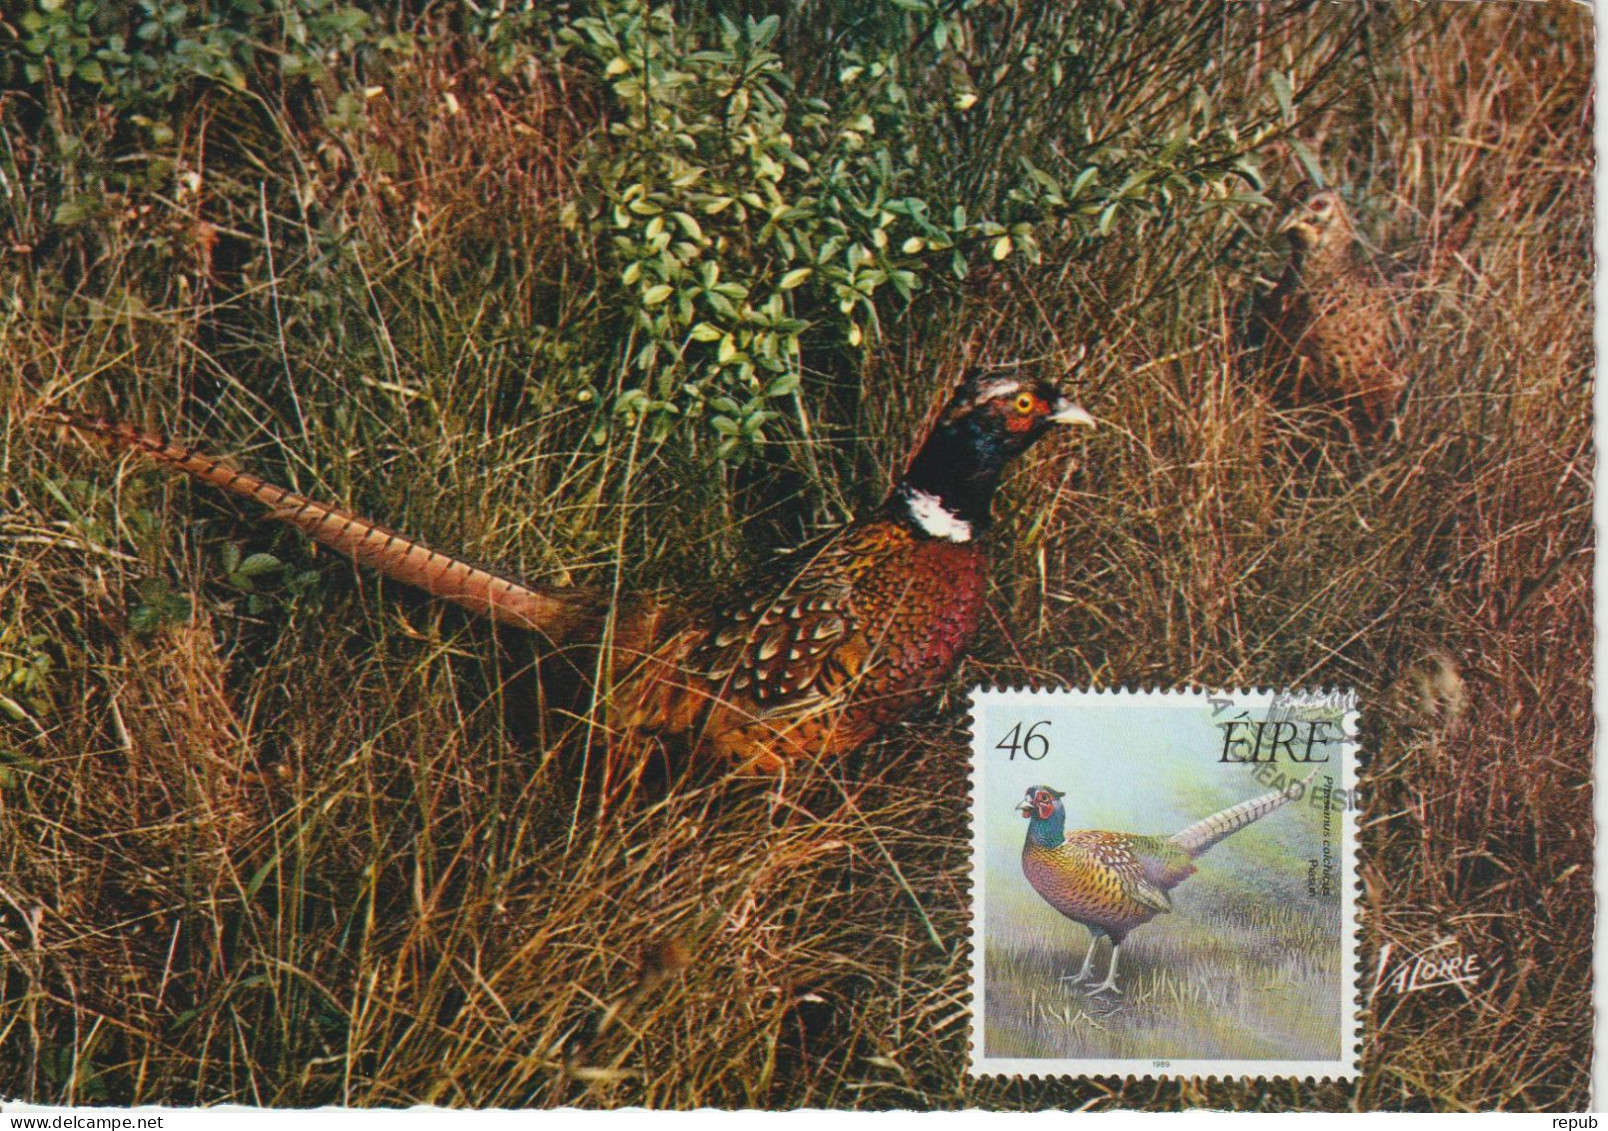 Irlande Carte Maximum 1989 Oiseaux Faisan 696 - Maximum Cards